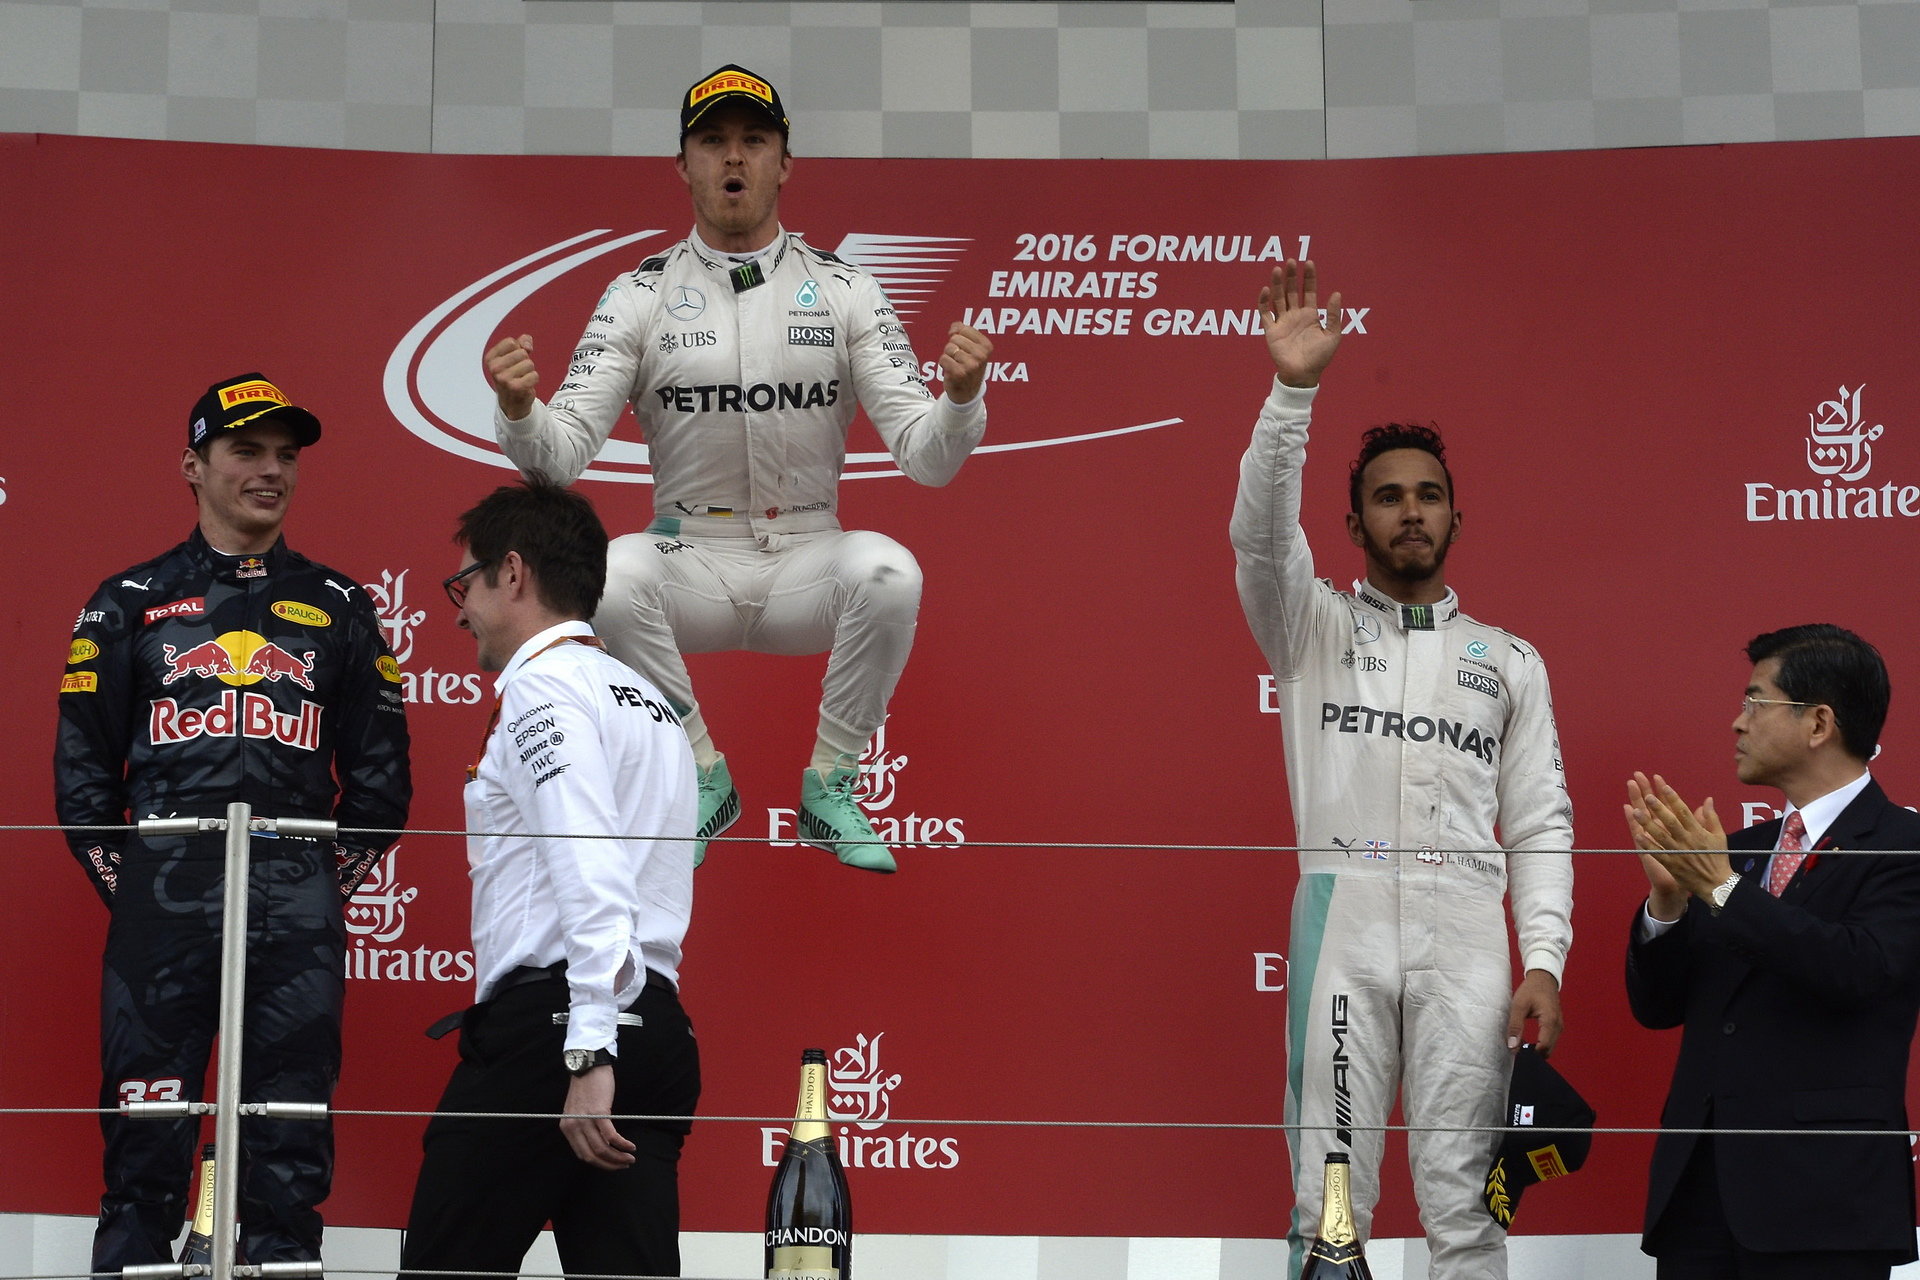 Vítězný výskok Nica Rosberga po vítězství v Japonsku, vedle něj vpravo zklamaný Lewis Hamilton